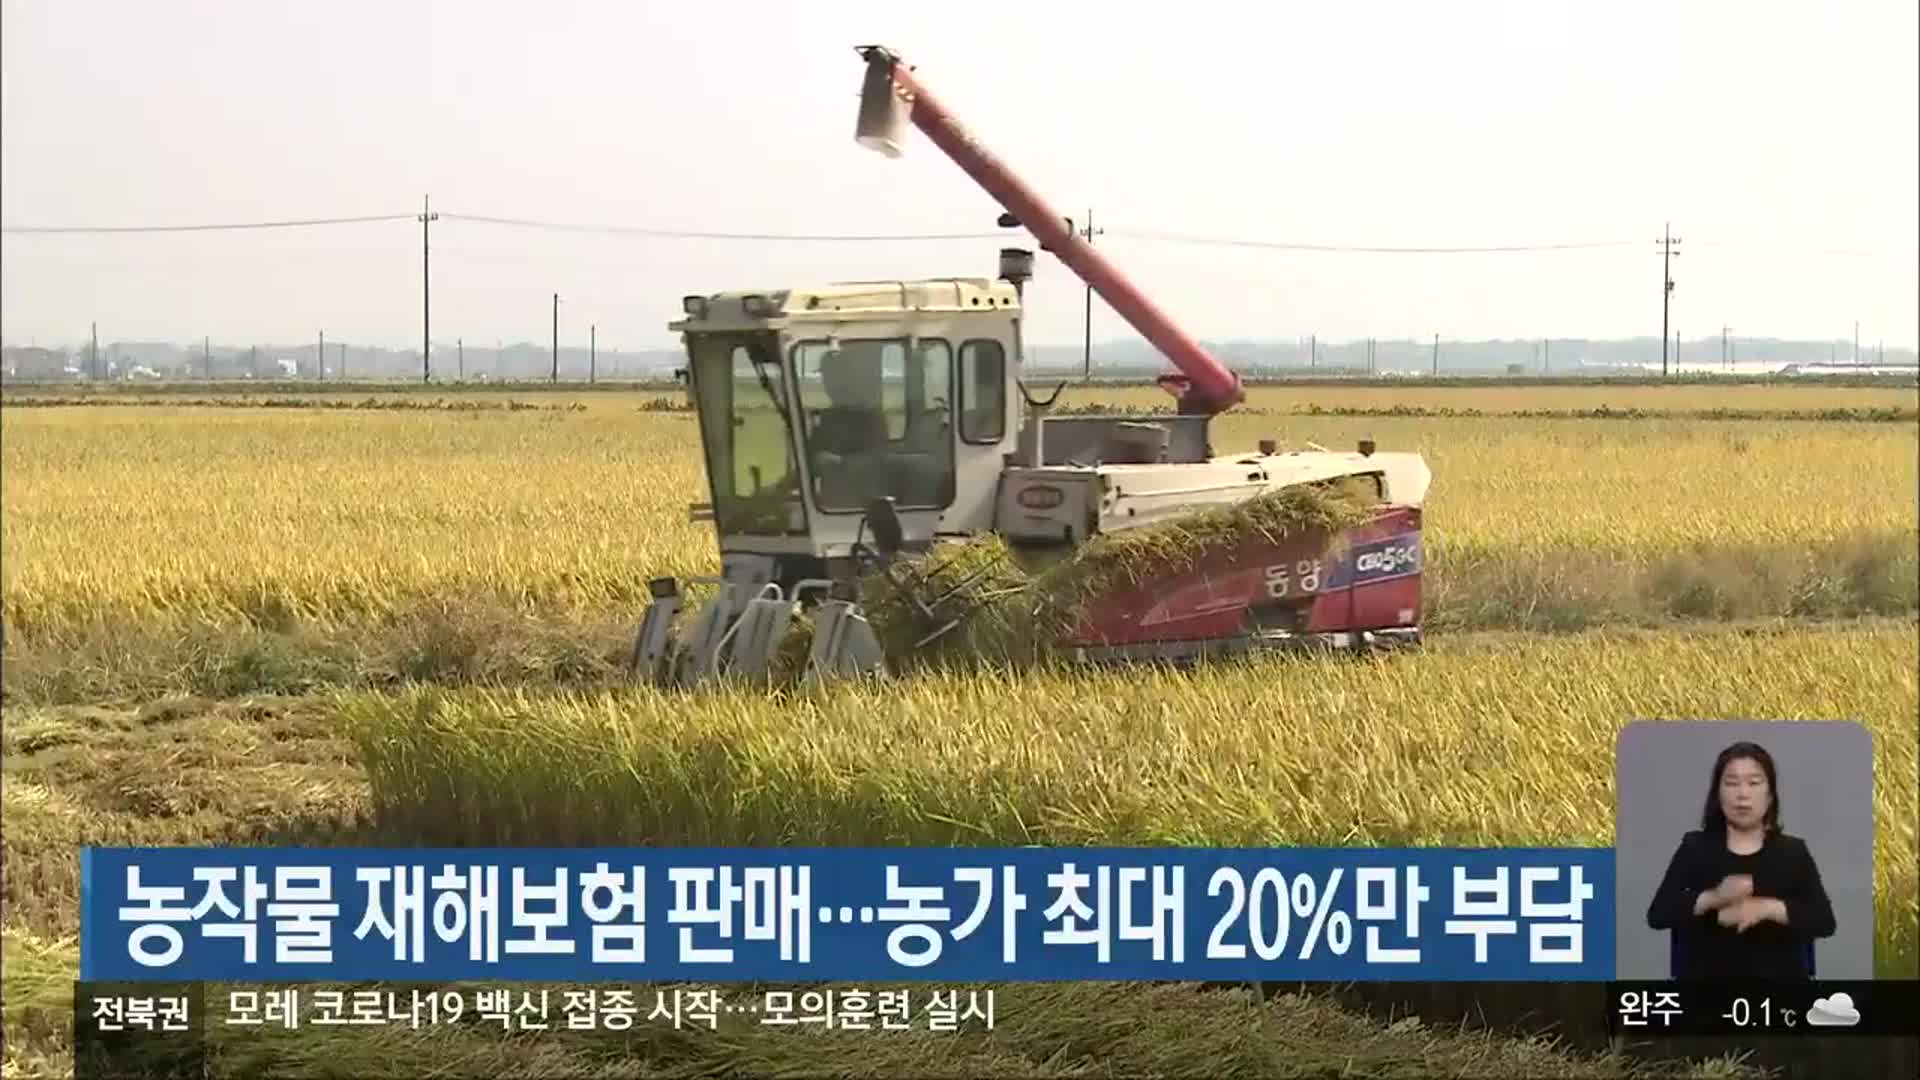 농작물 재해보험 판매…농가 최대 20%만 부담